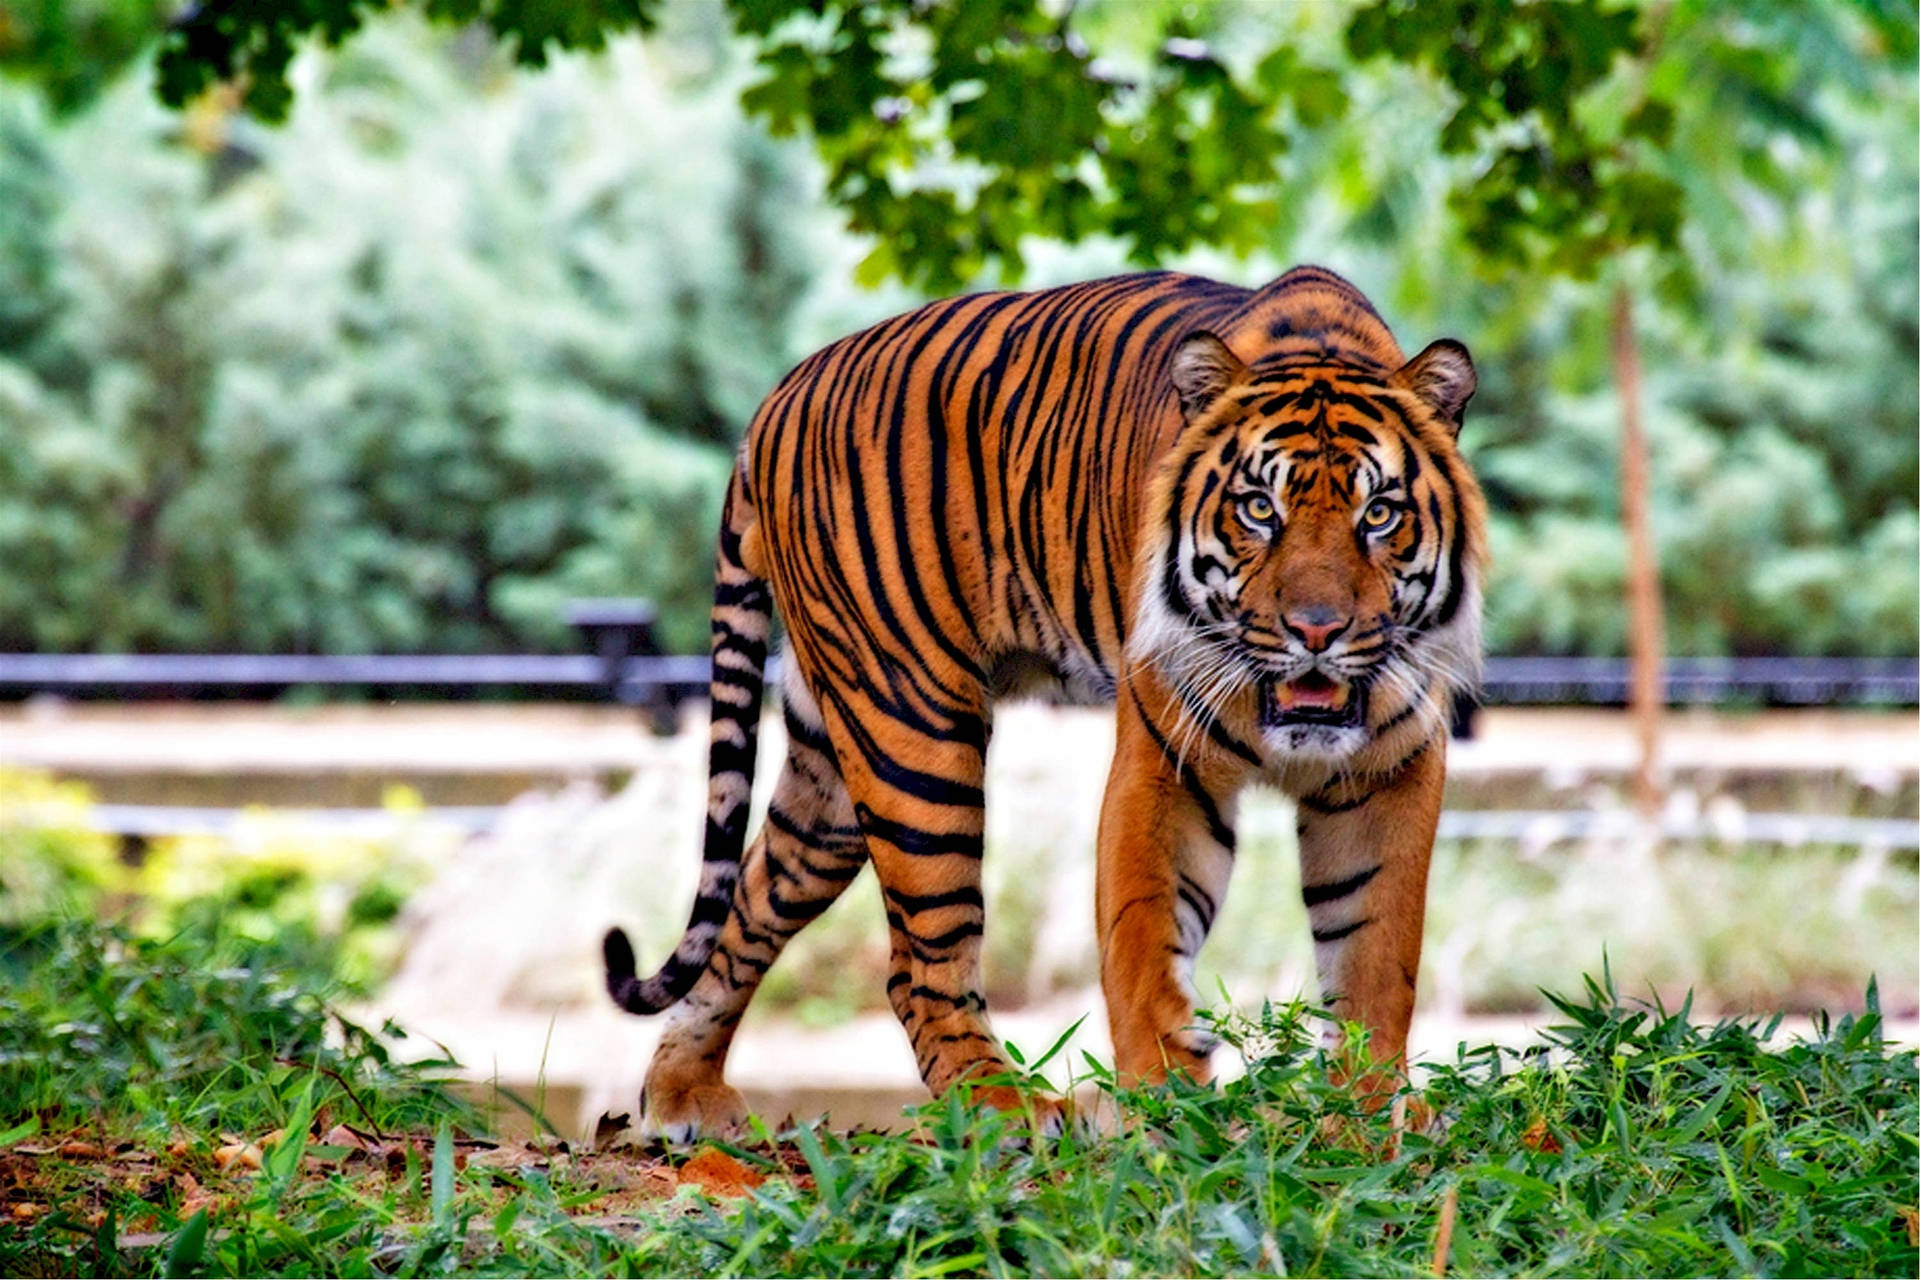 Intense Harimau Walking On Grass